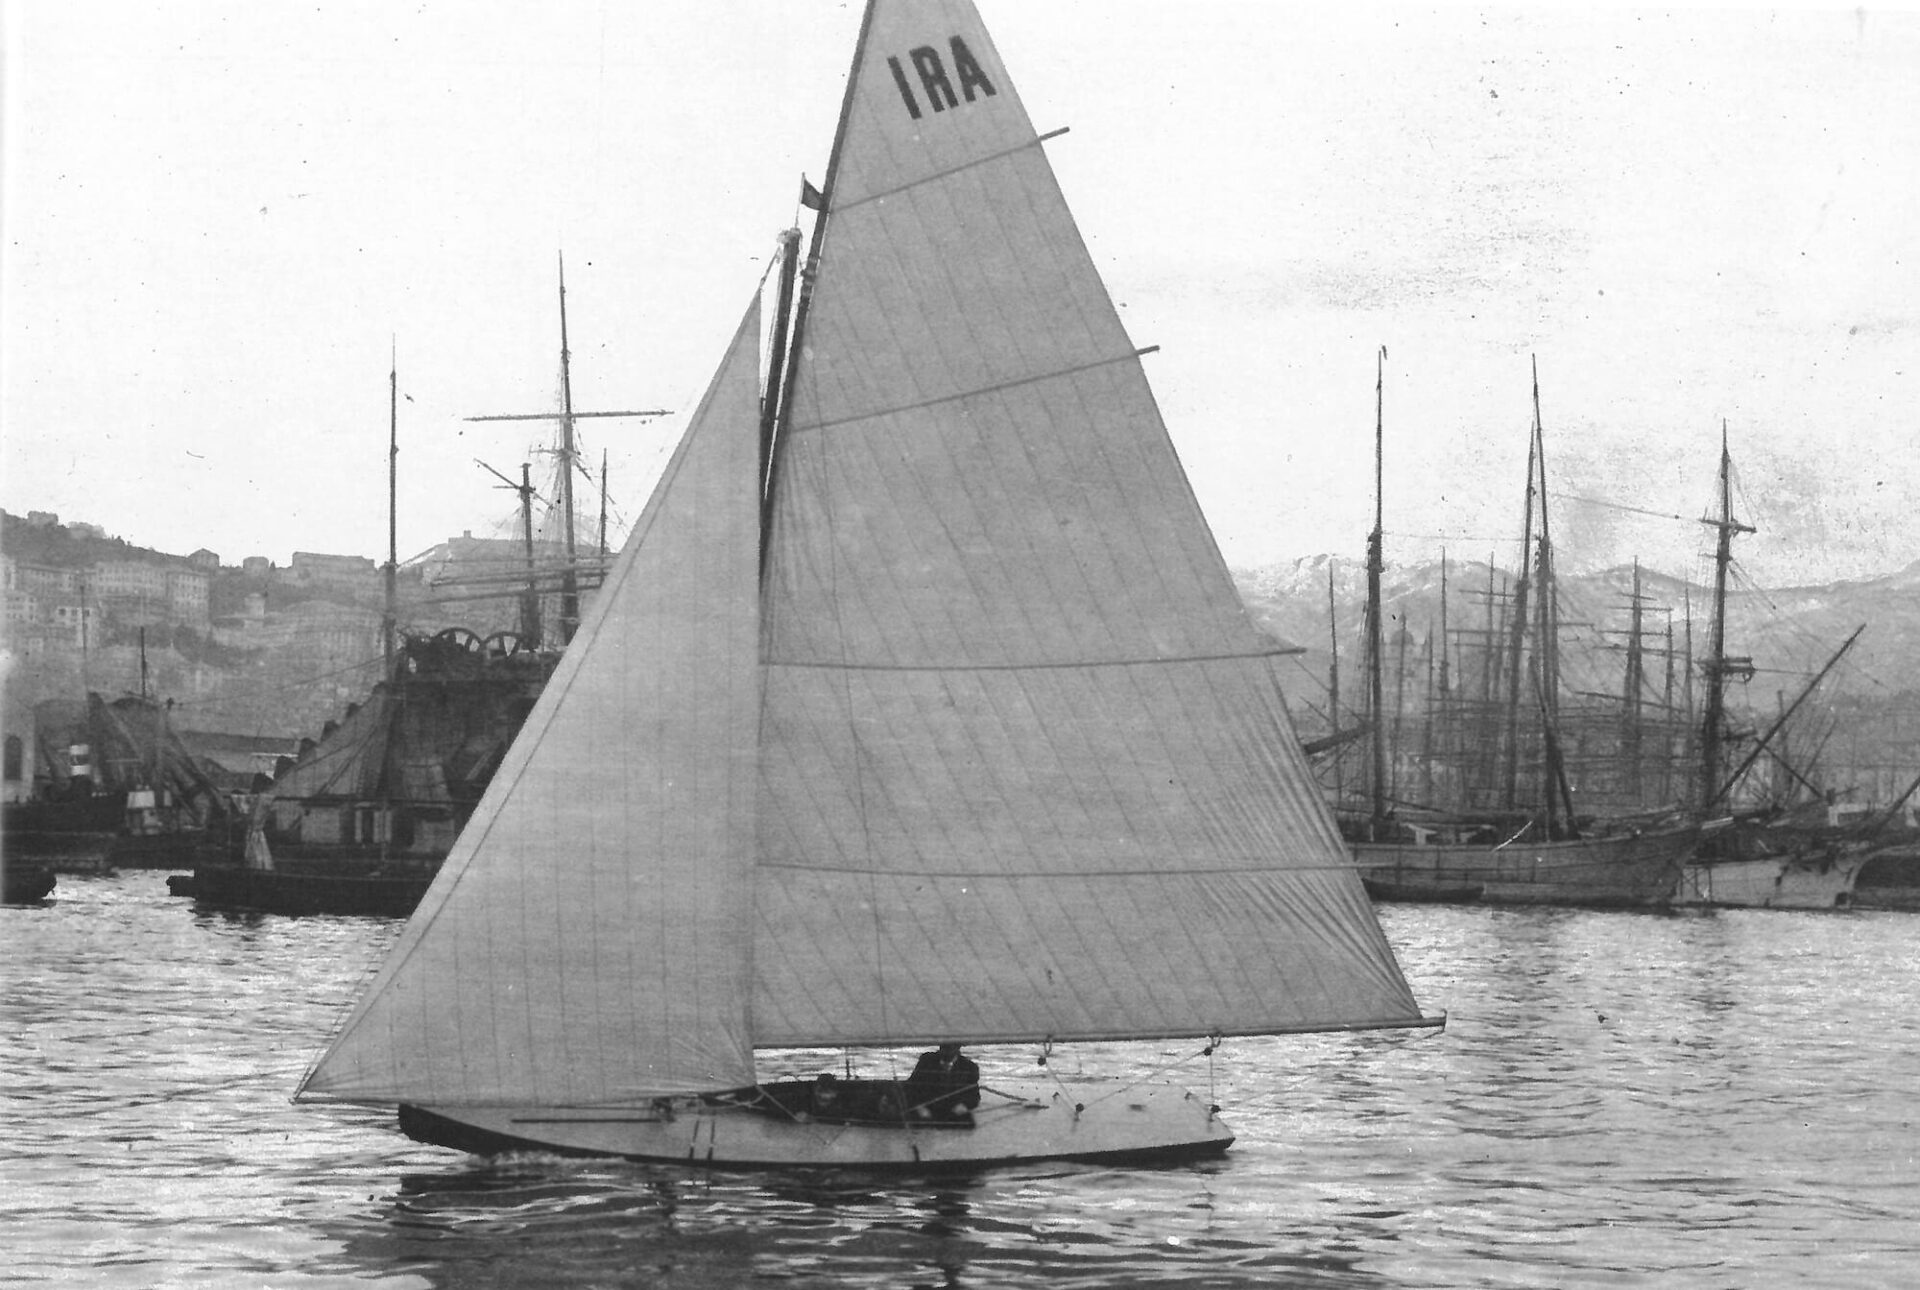 1905 - Ira, yacht a vela in navigazione